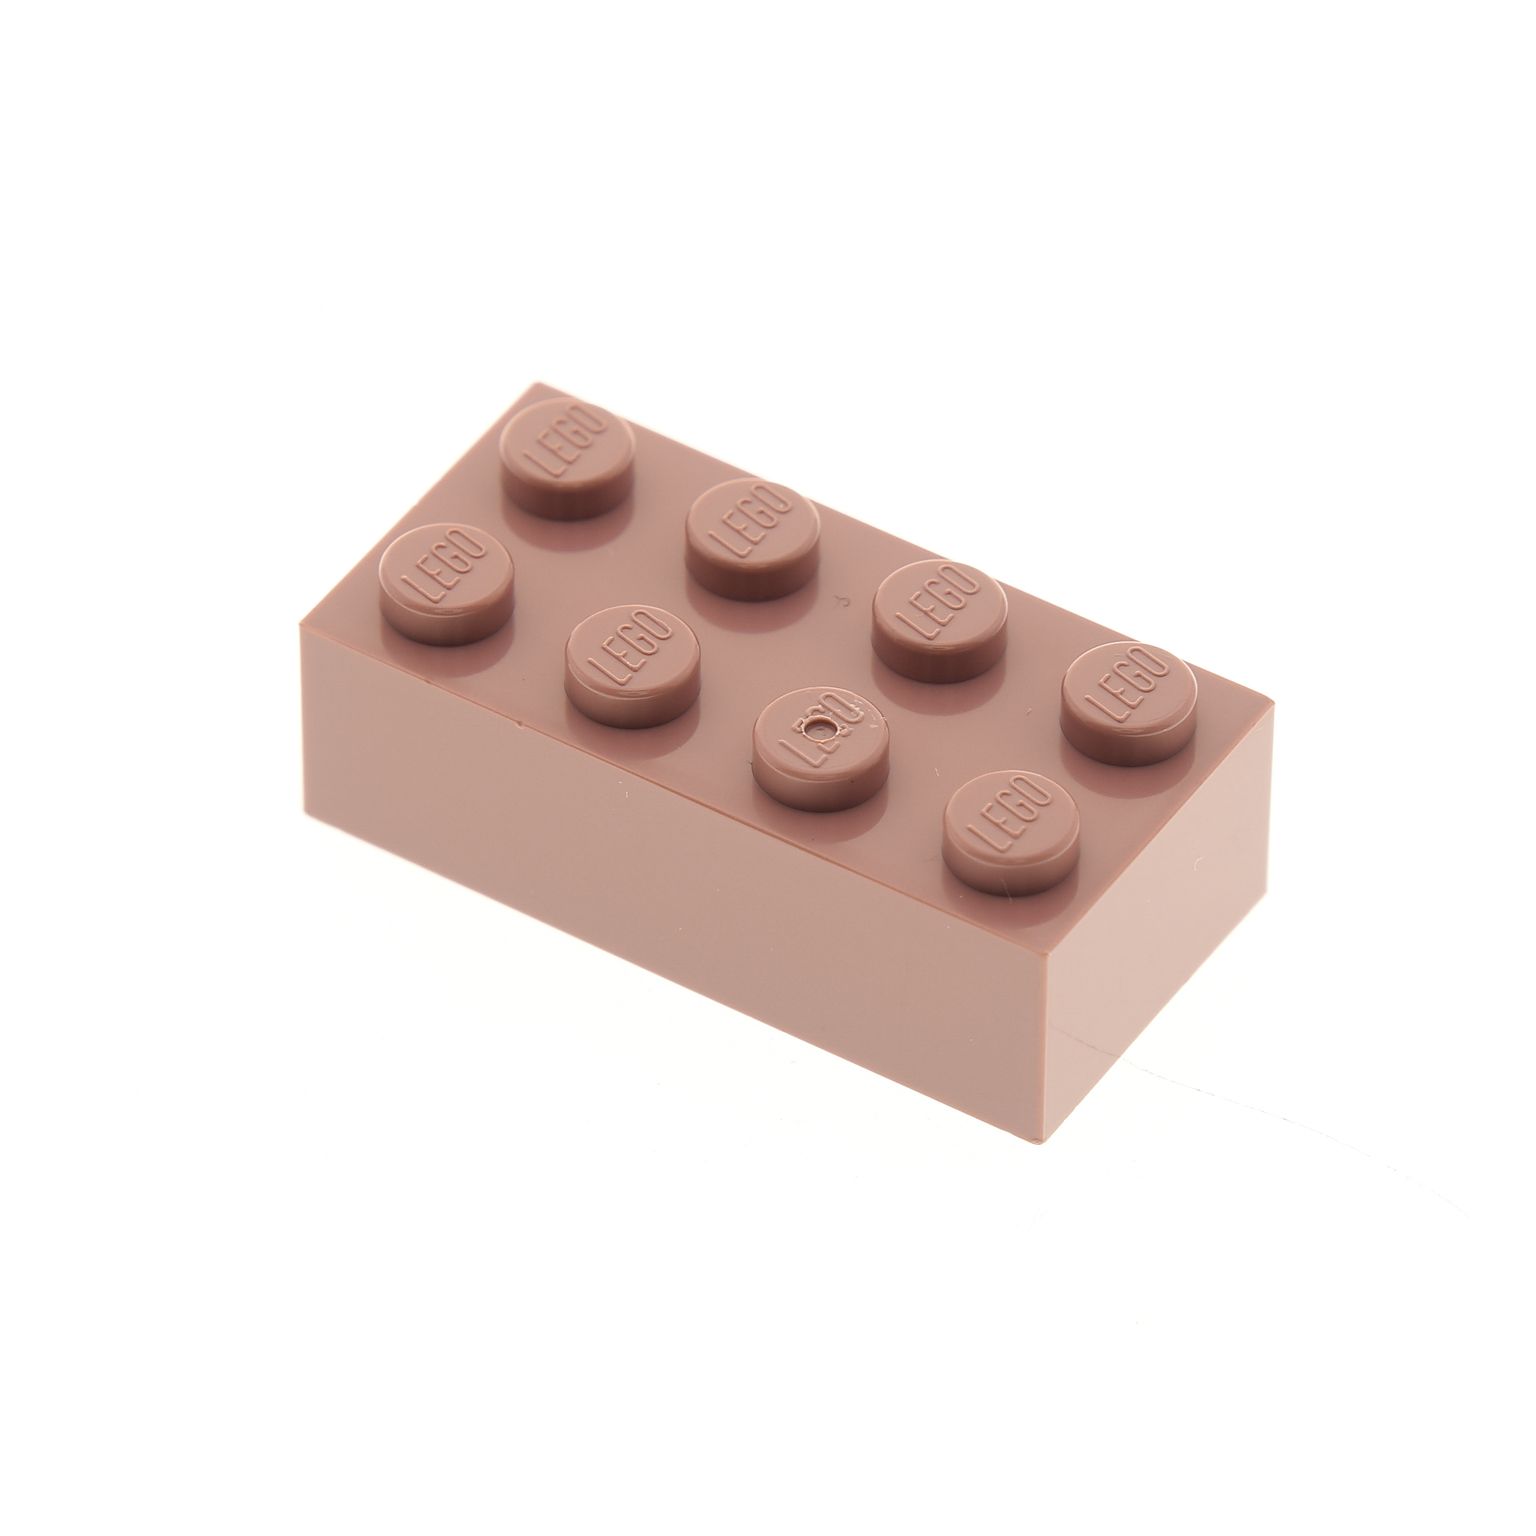 10x Stein Basic Baustein Hoch Classic 1x2x2-3245 Lego® Beige Sand